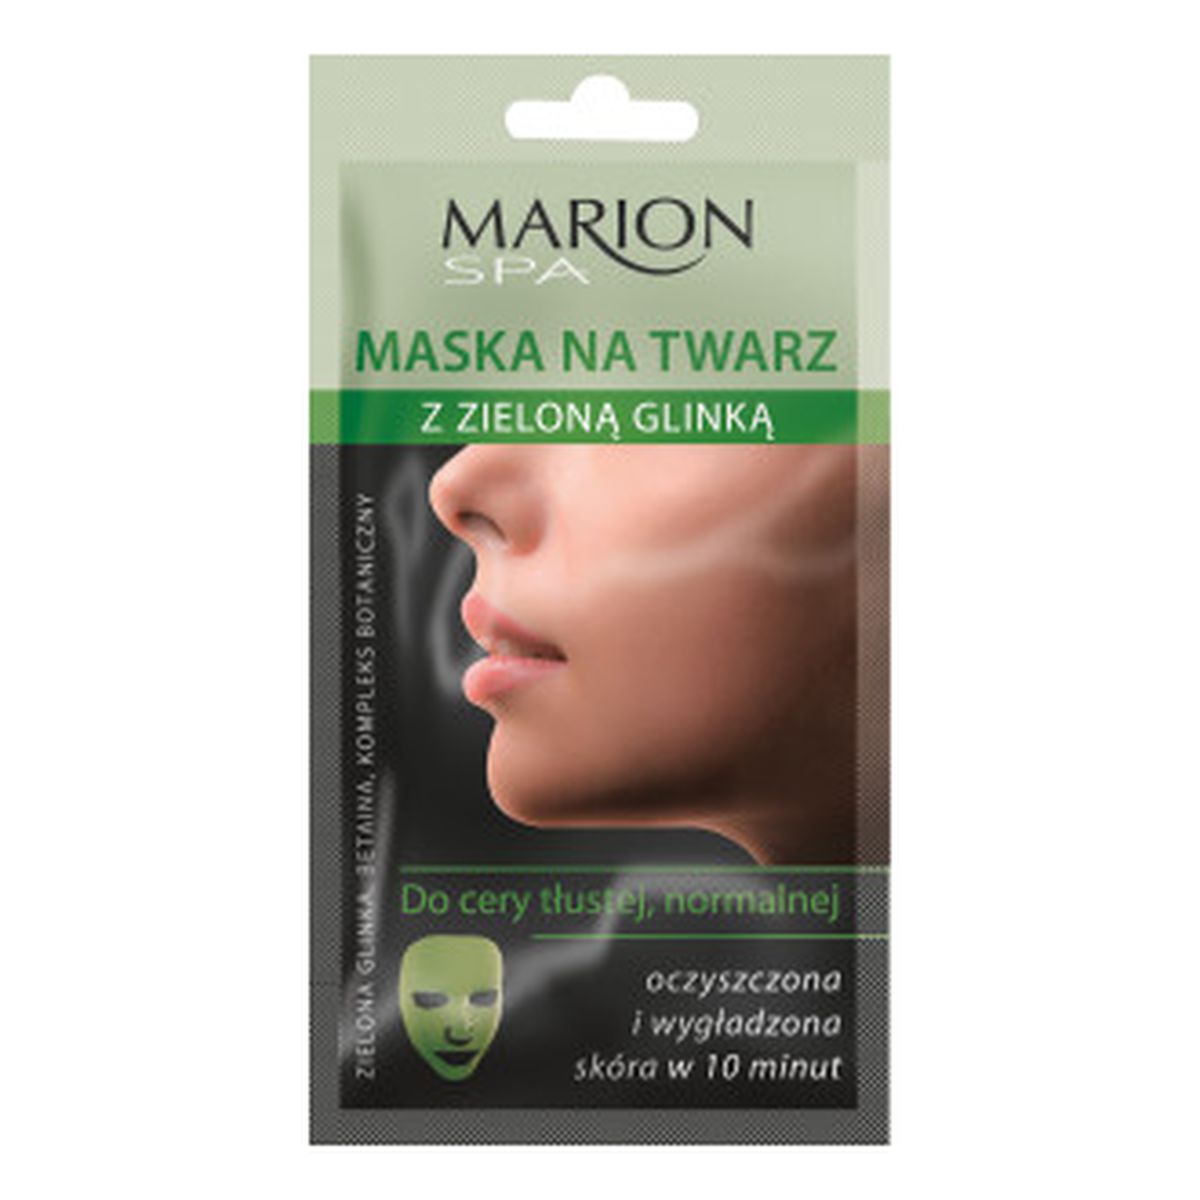 Marion Spa Maska Na Twarz z Zieloną Glinką 20ml